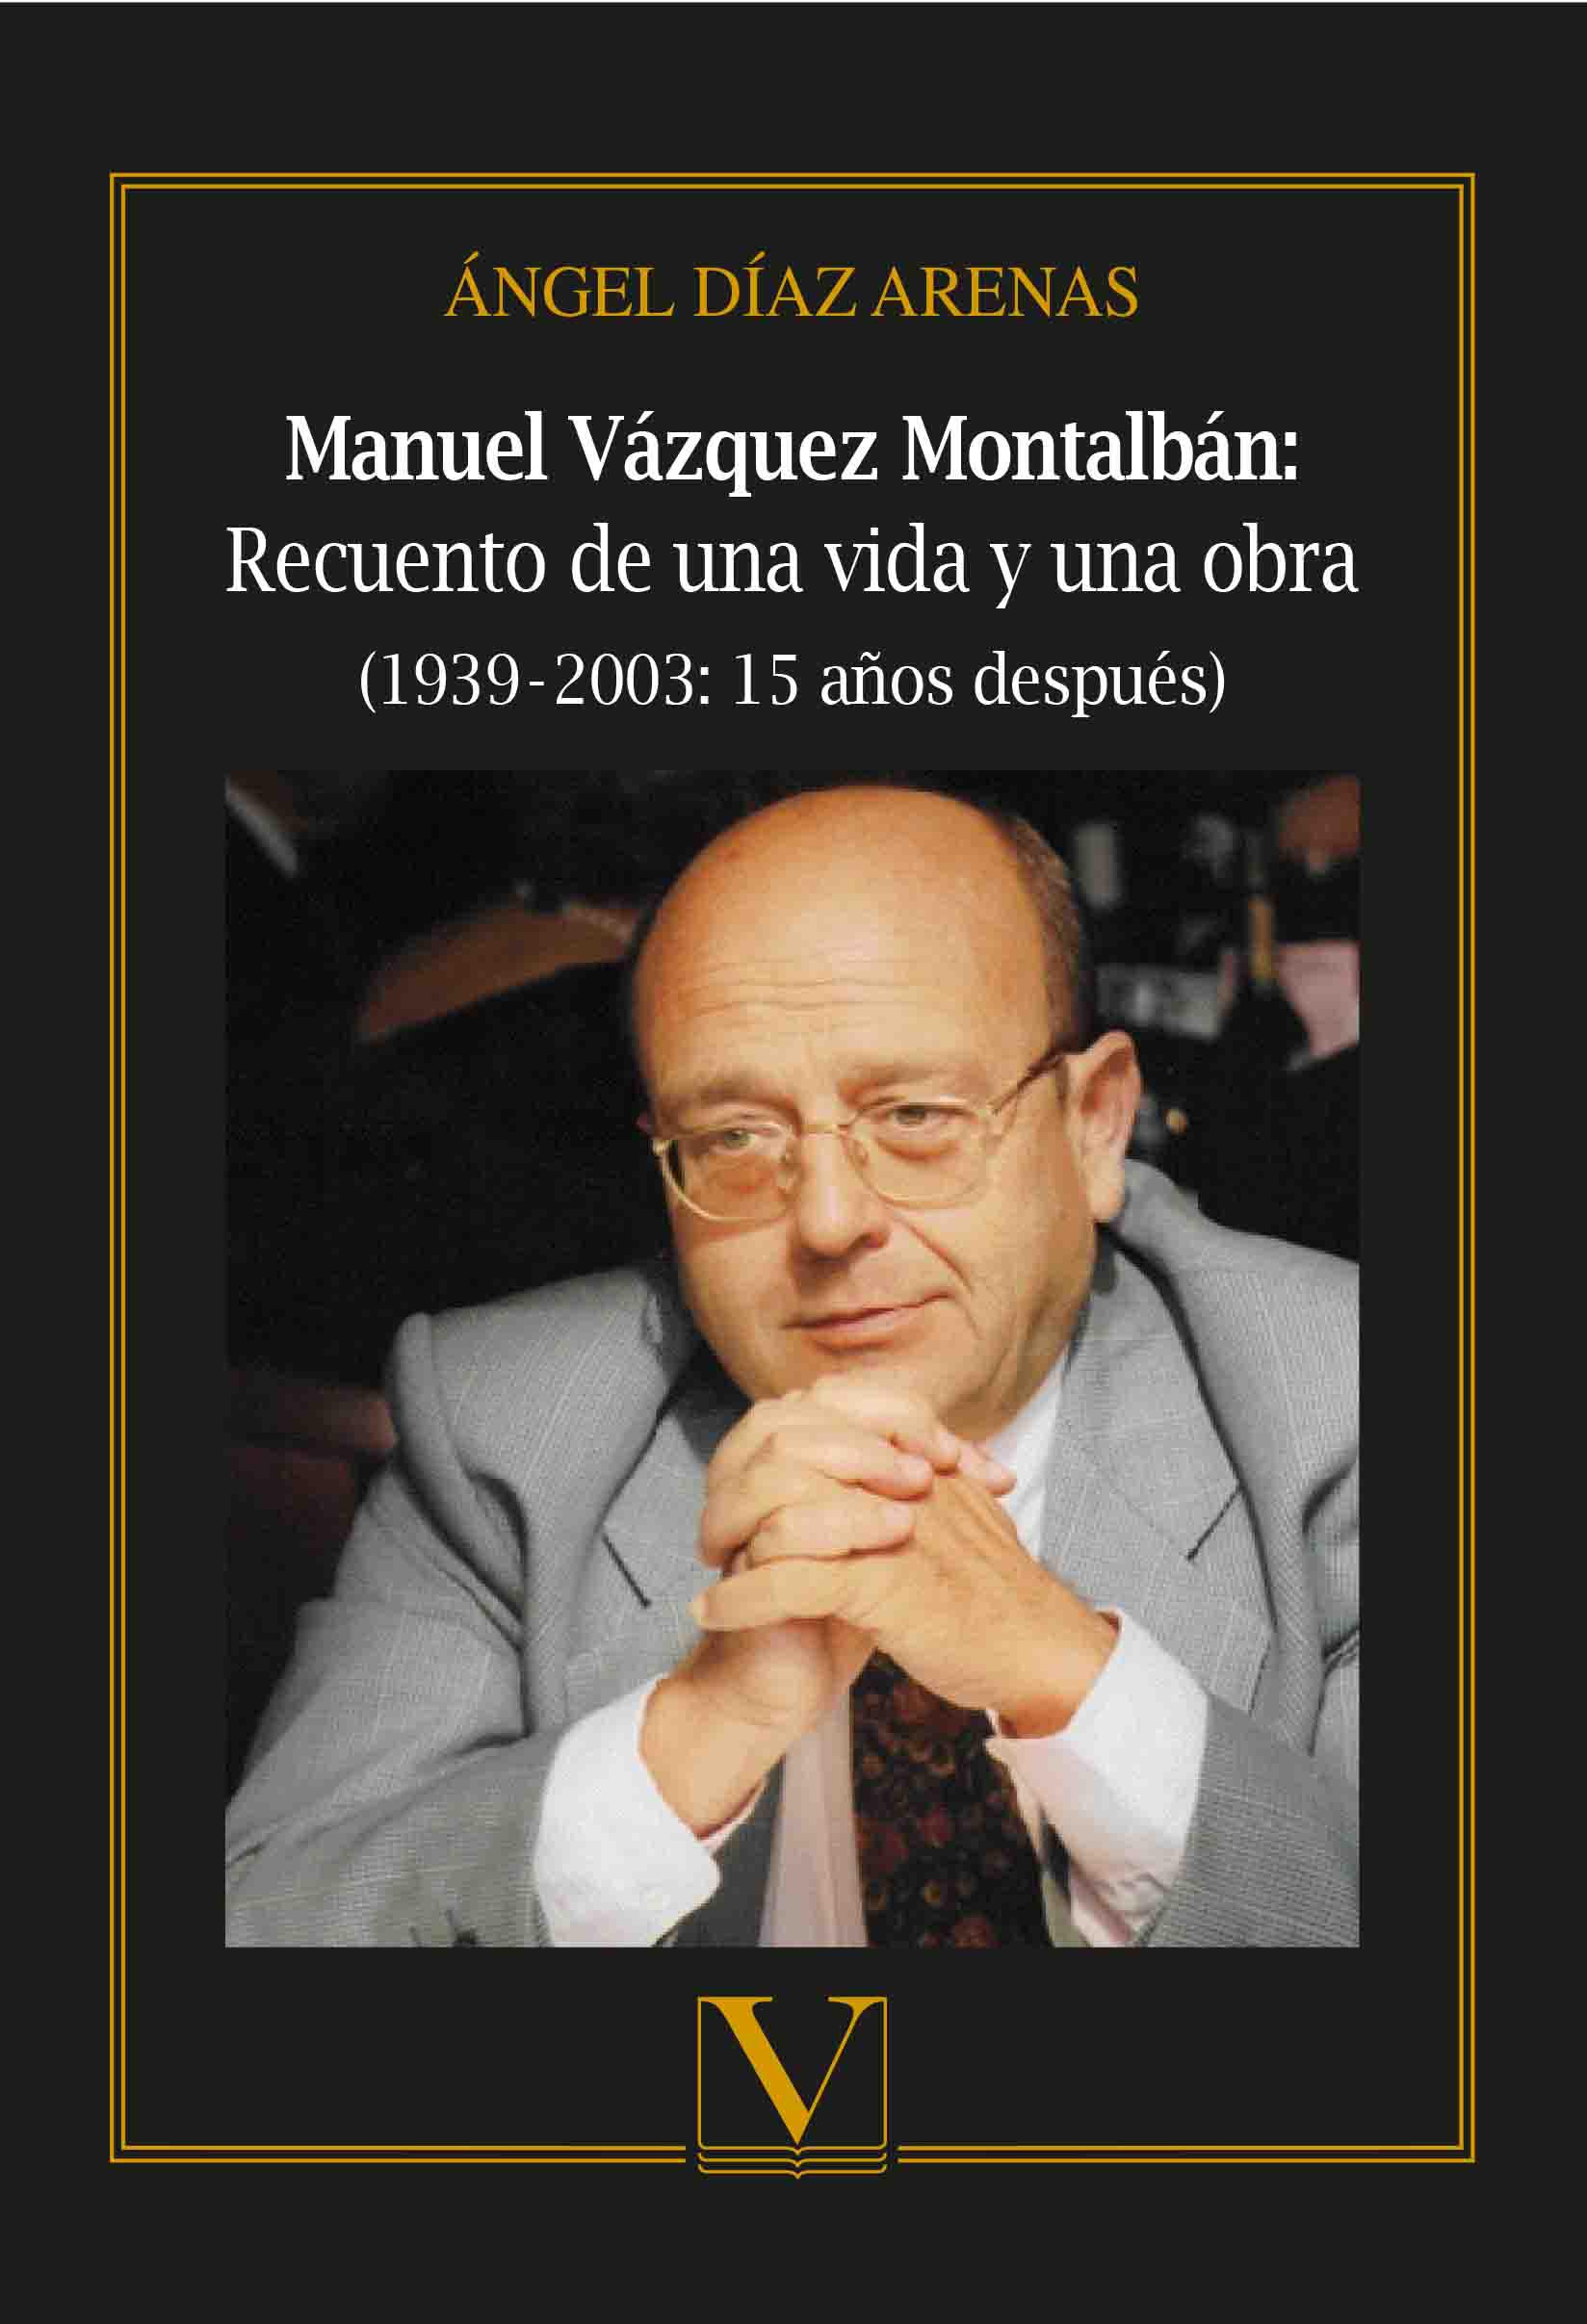 Manuel Vázquez Montalbán: recuento de una vida y una obra